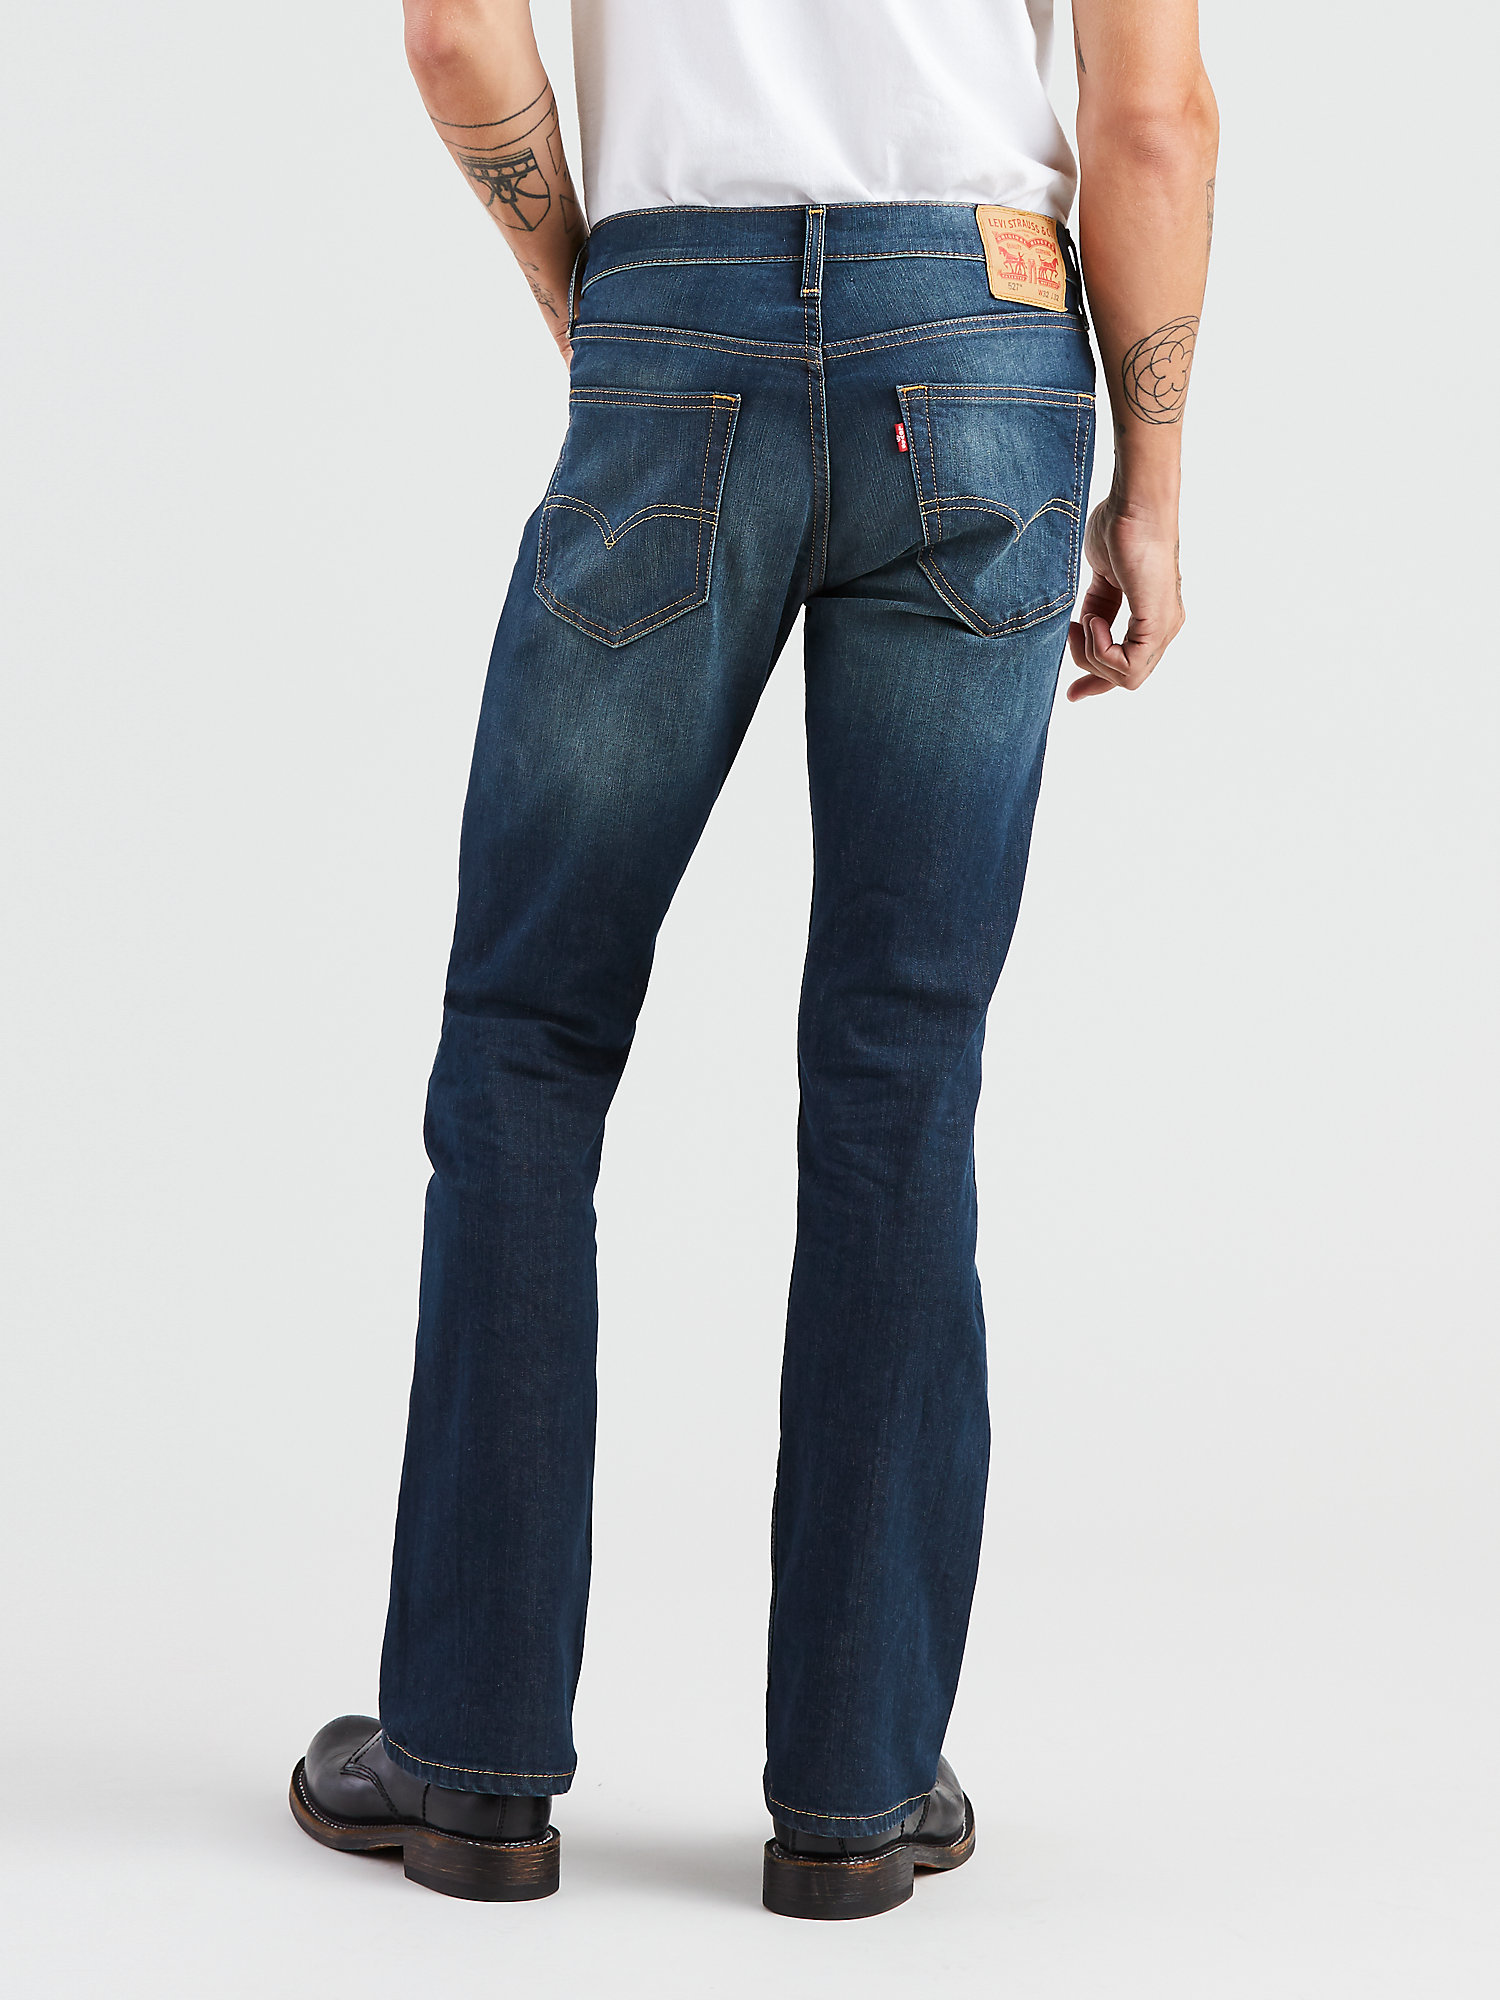 Levi's Men's 527 Slim Boot Cut Fit Jeans - image 3 of 7